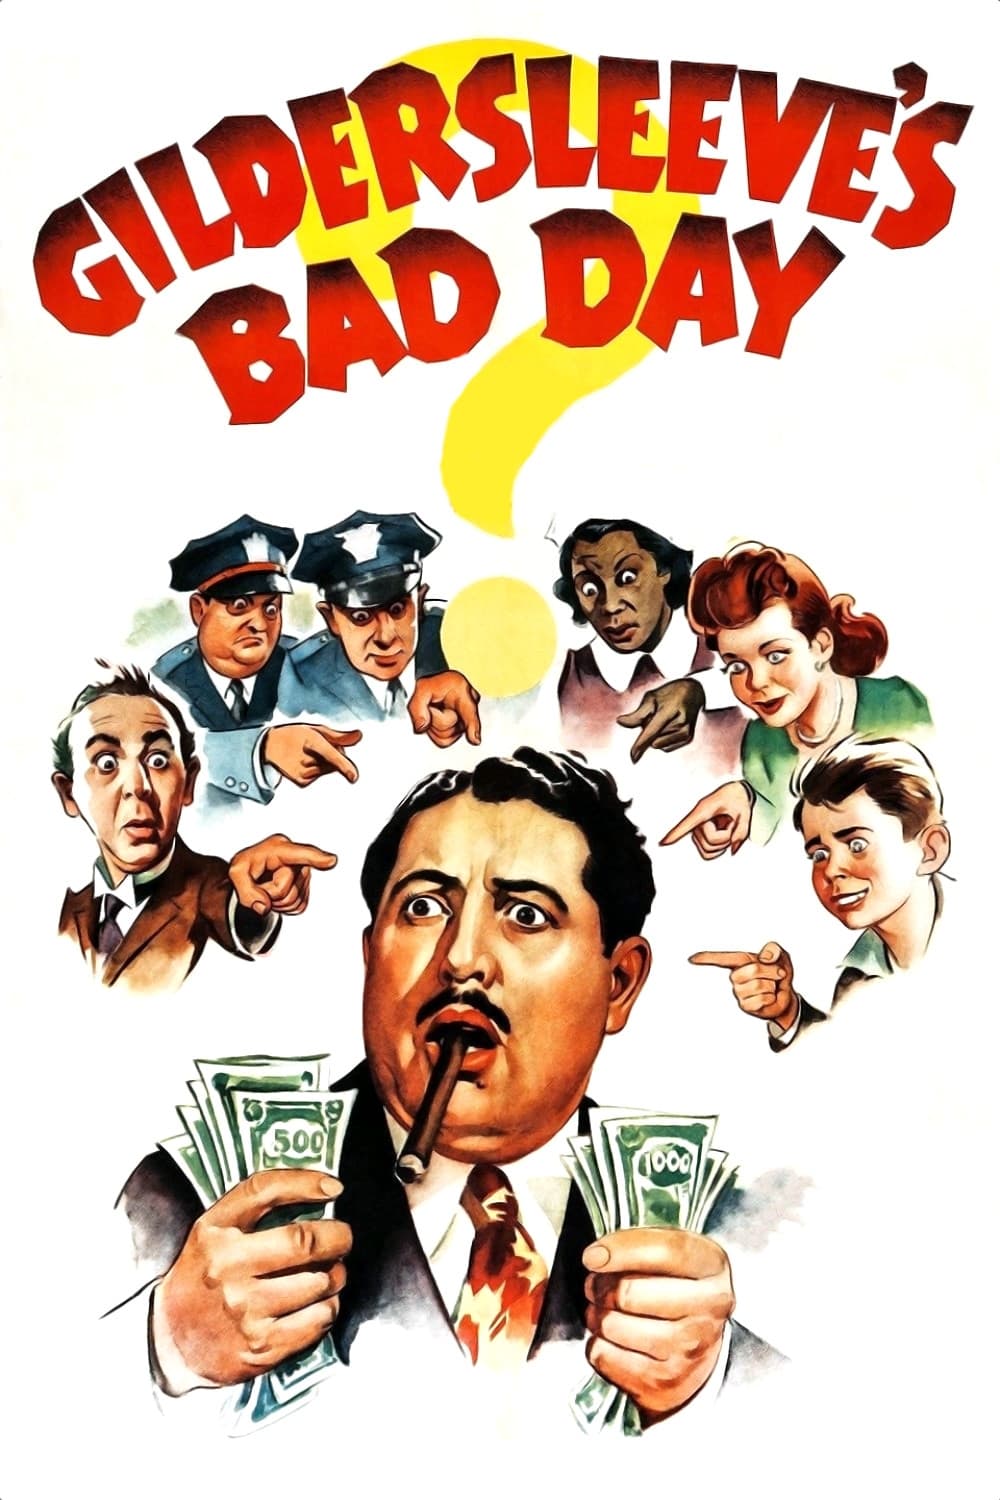 Gildersleeve's Bad Day (1943)